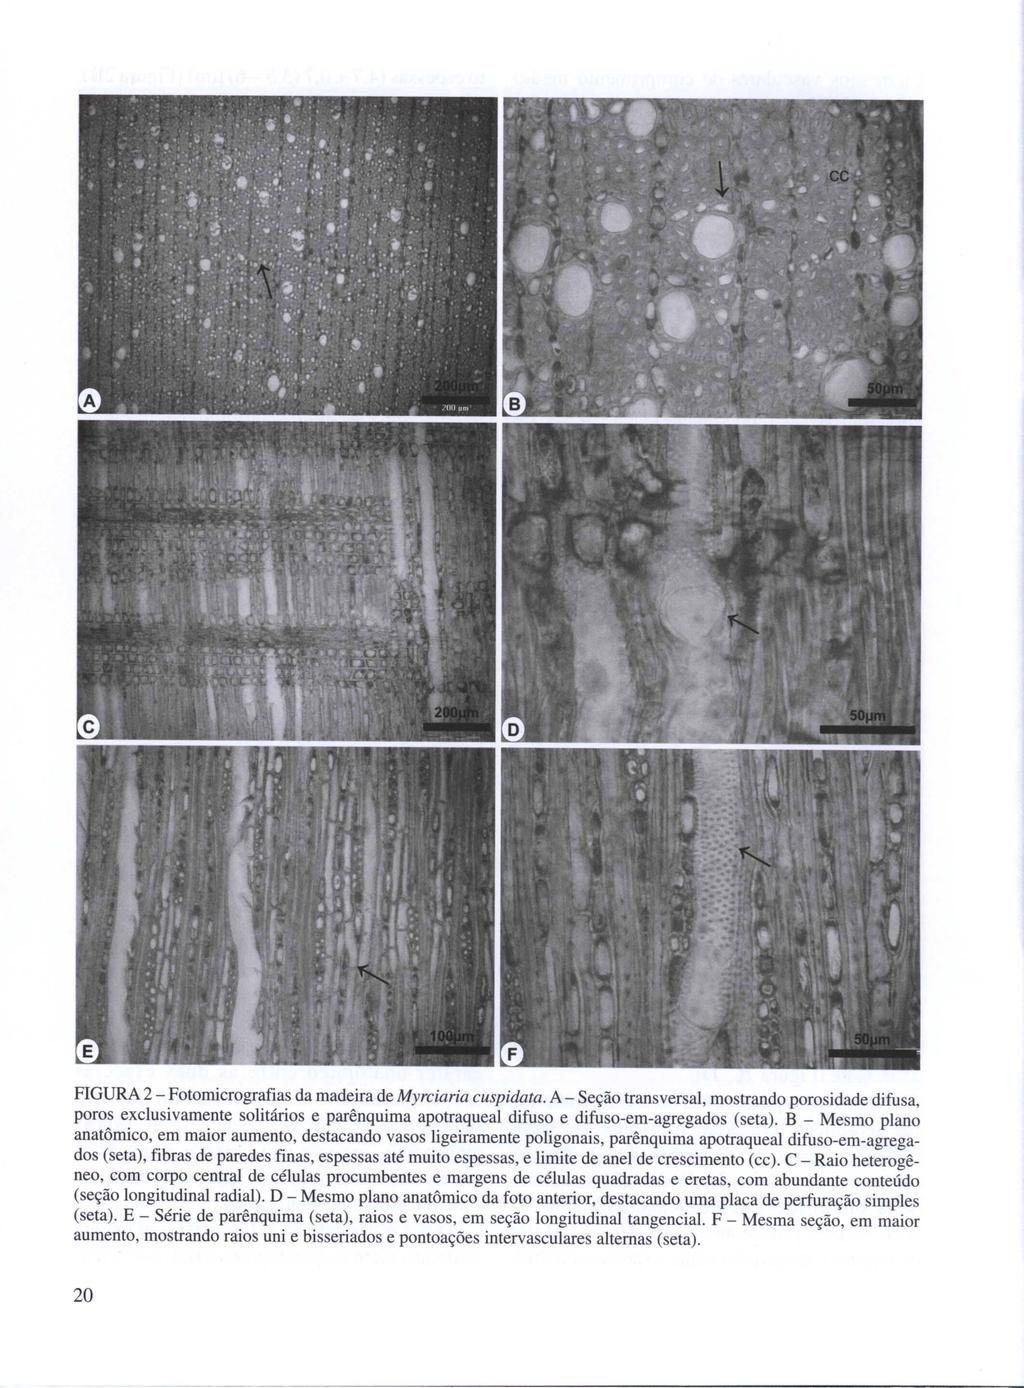 FIGURA 2 - Fotomicrografias da madeira de Myrciaria cuspidata.